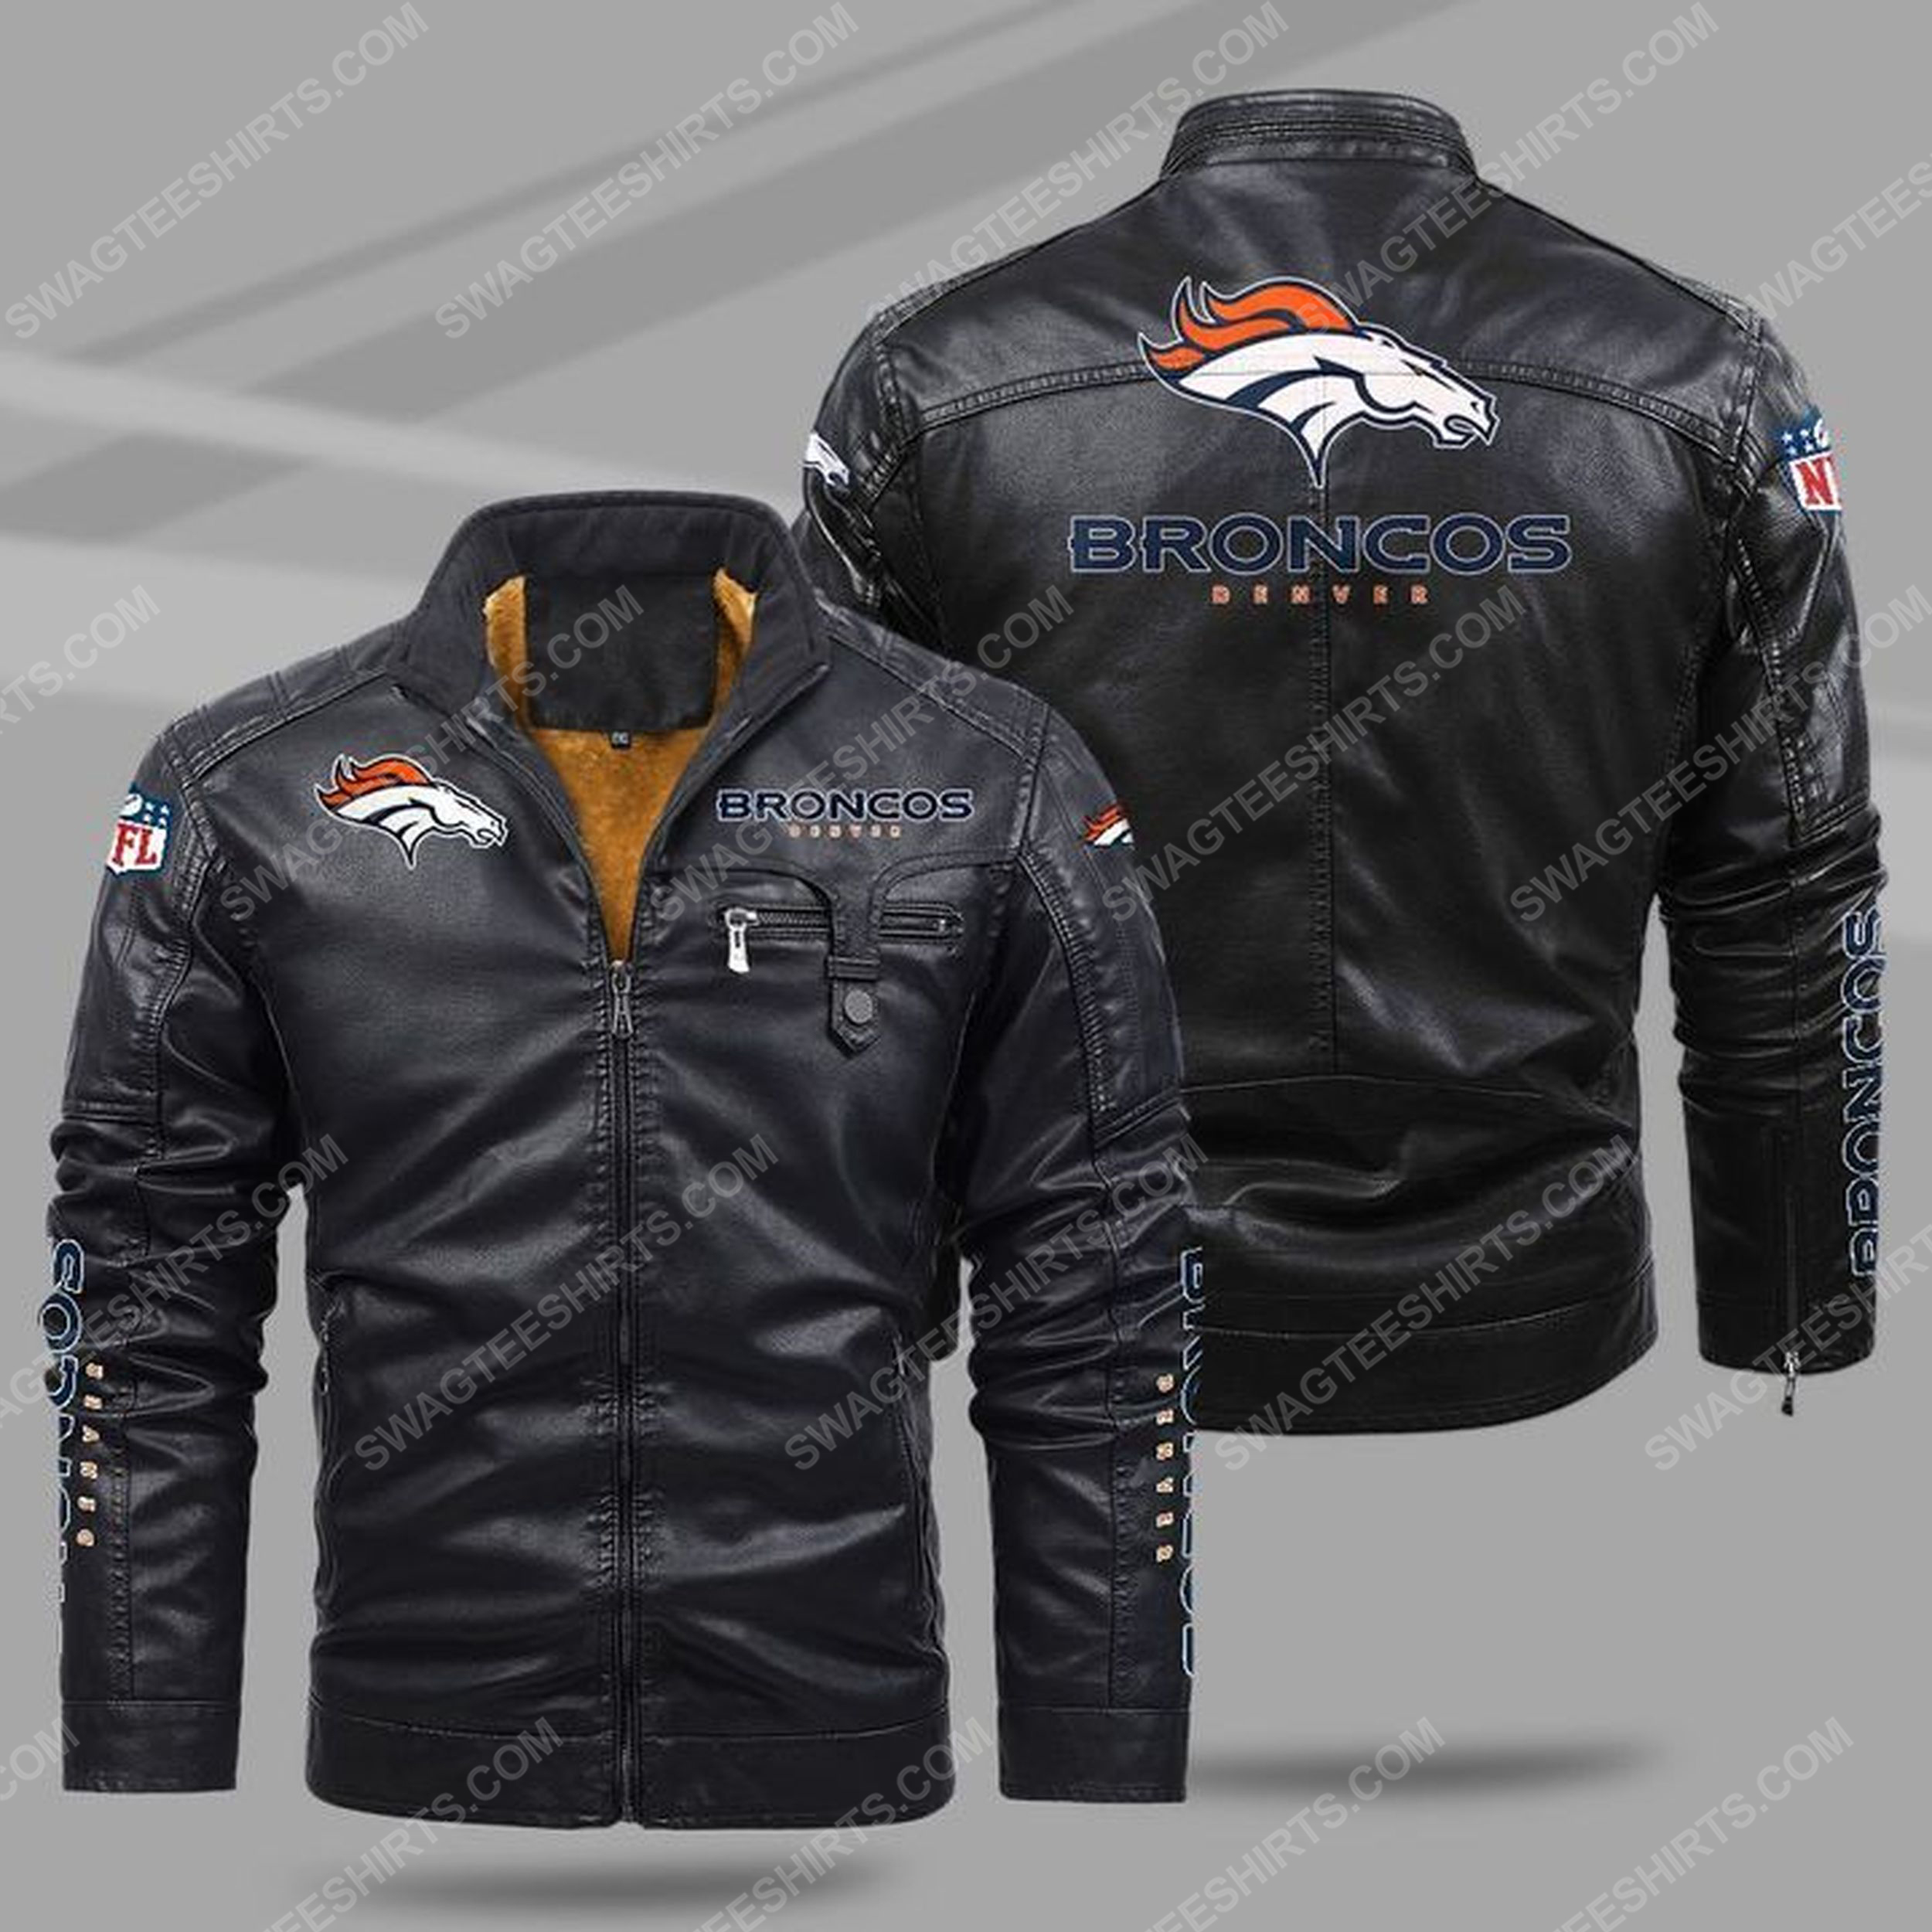 The denver broncos nfl all over print fleece leather jacket - black 1 - Copy